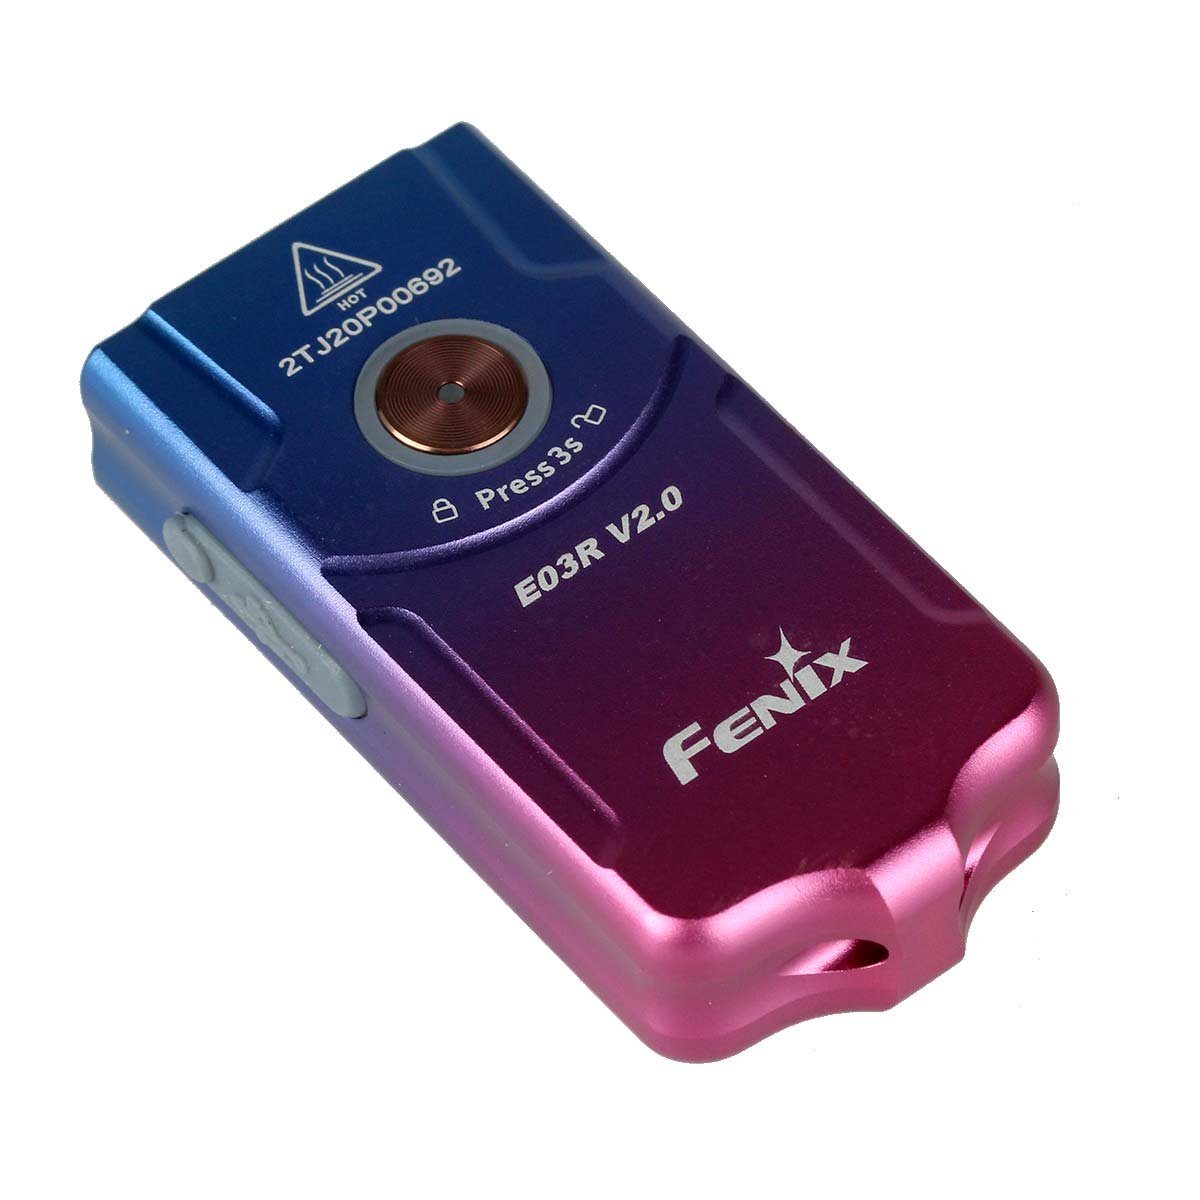 LED E03R nebula Schlüsselbundleuchte LED Fenix Edition Limited V2.0 Taschenlampe